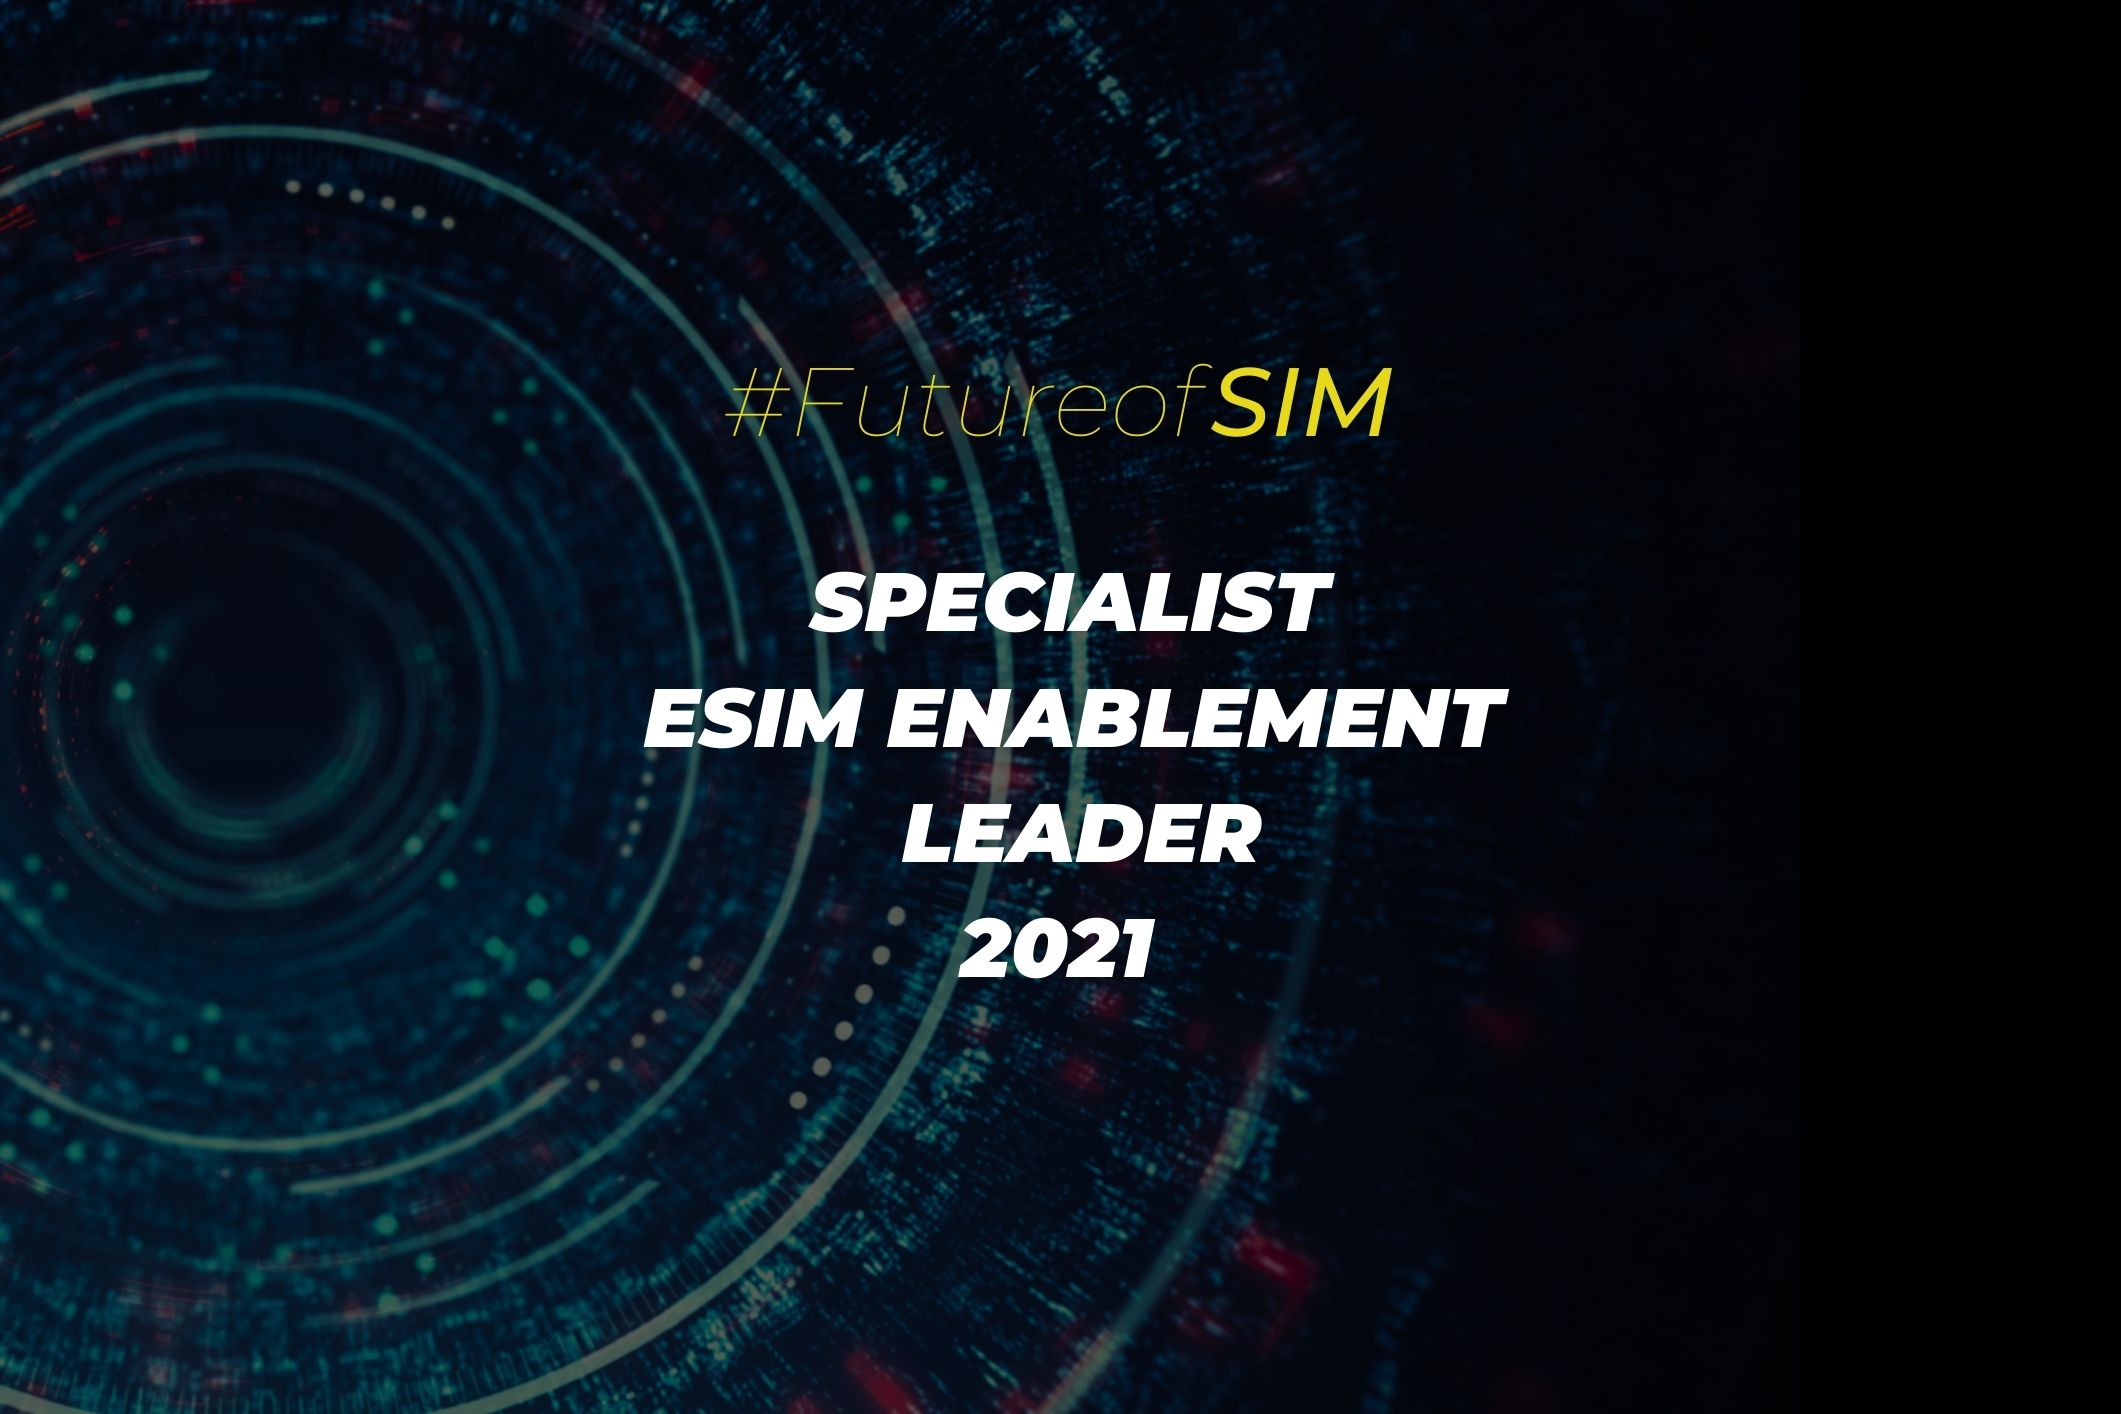 eSIM enablement specialist